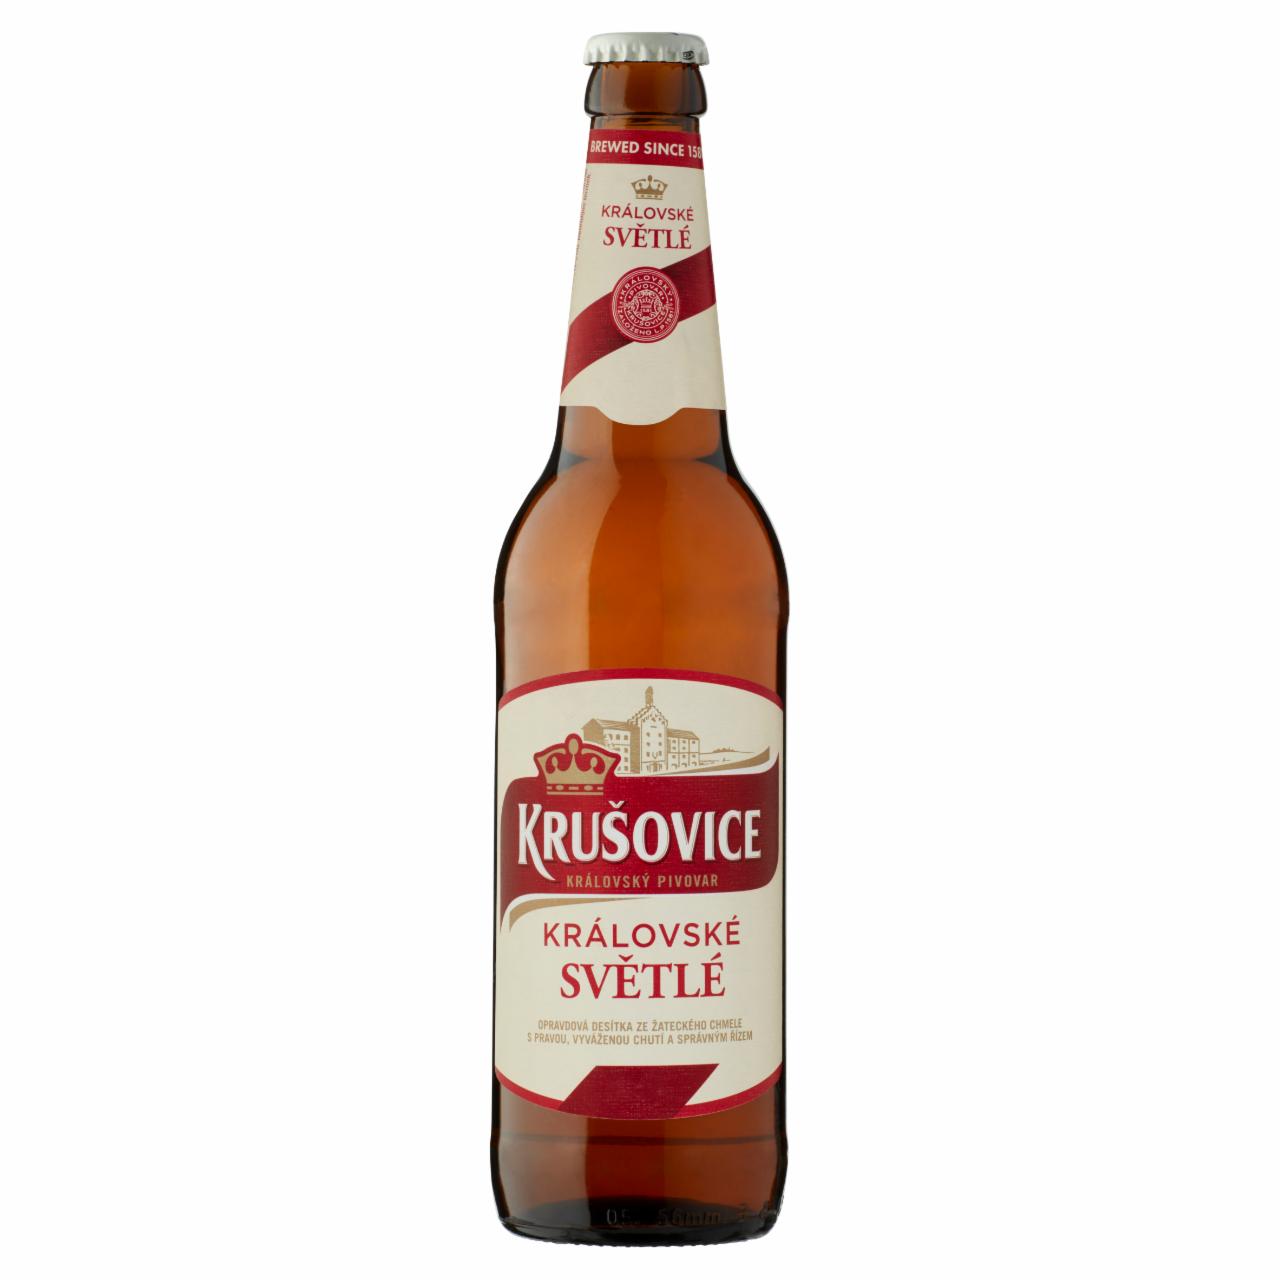 Képek - Krušovice Světlé eredeti cseh import világos sör 4,2% 0,5 l üveg